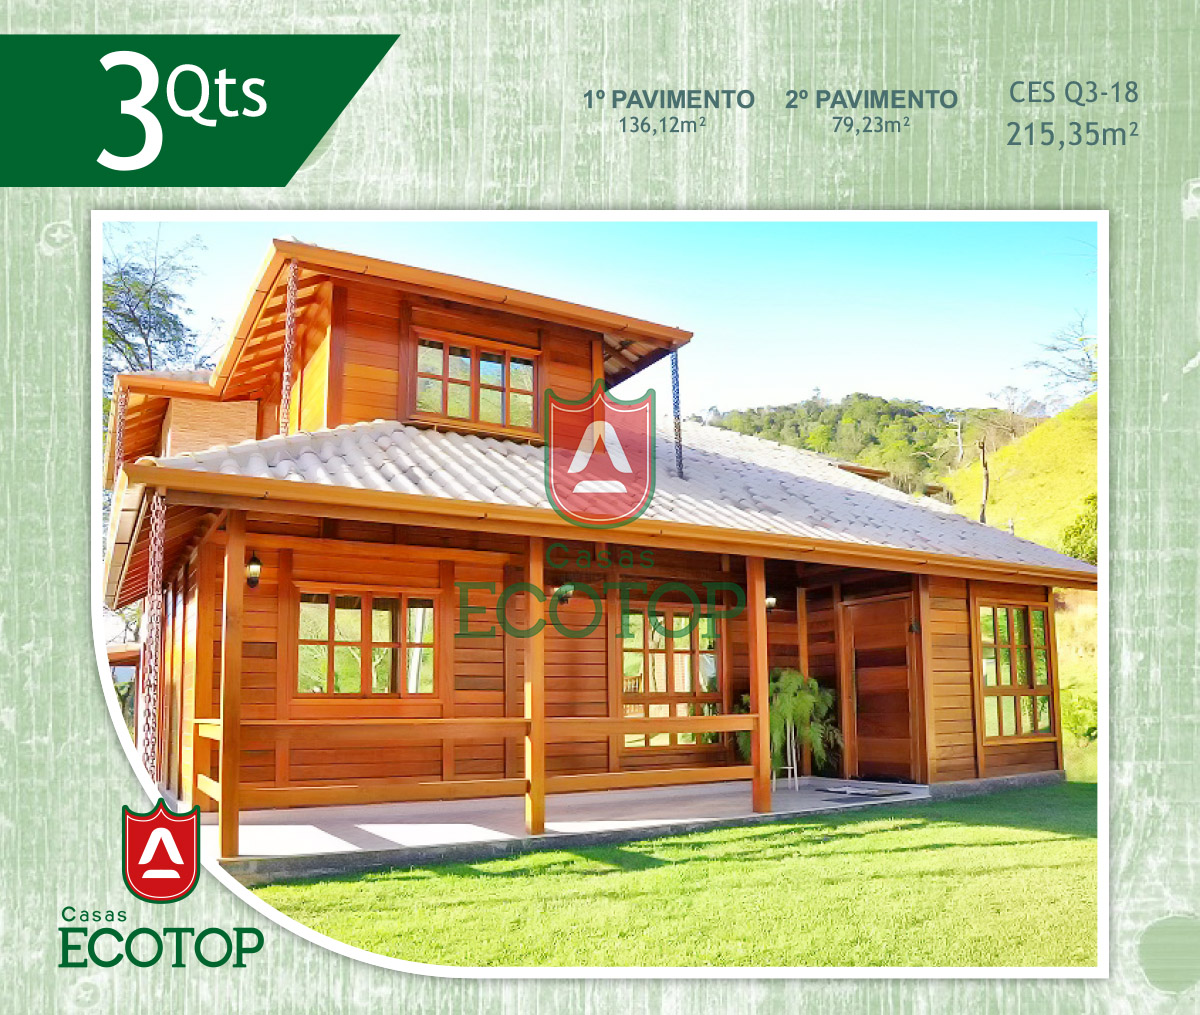 ces-18-fachada-casas-de-madeira-ecotop.cdr